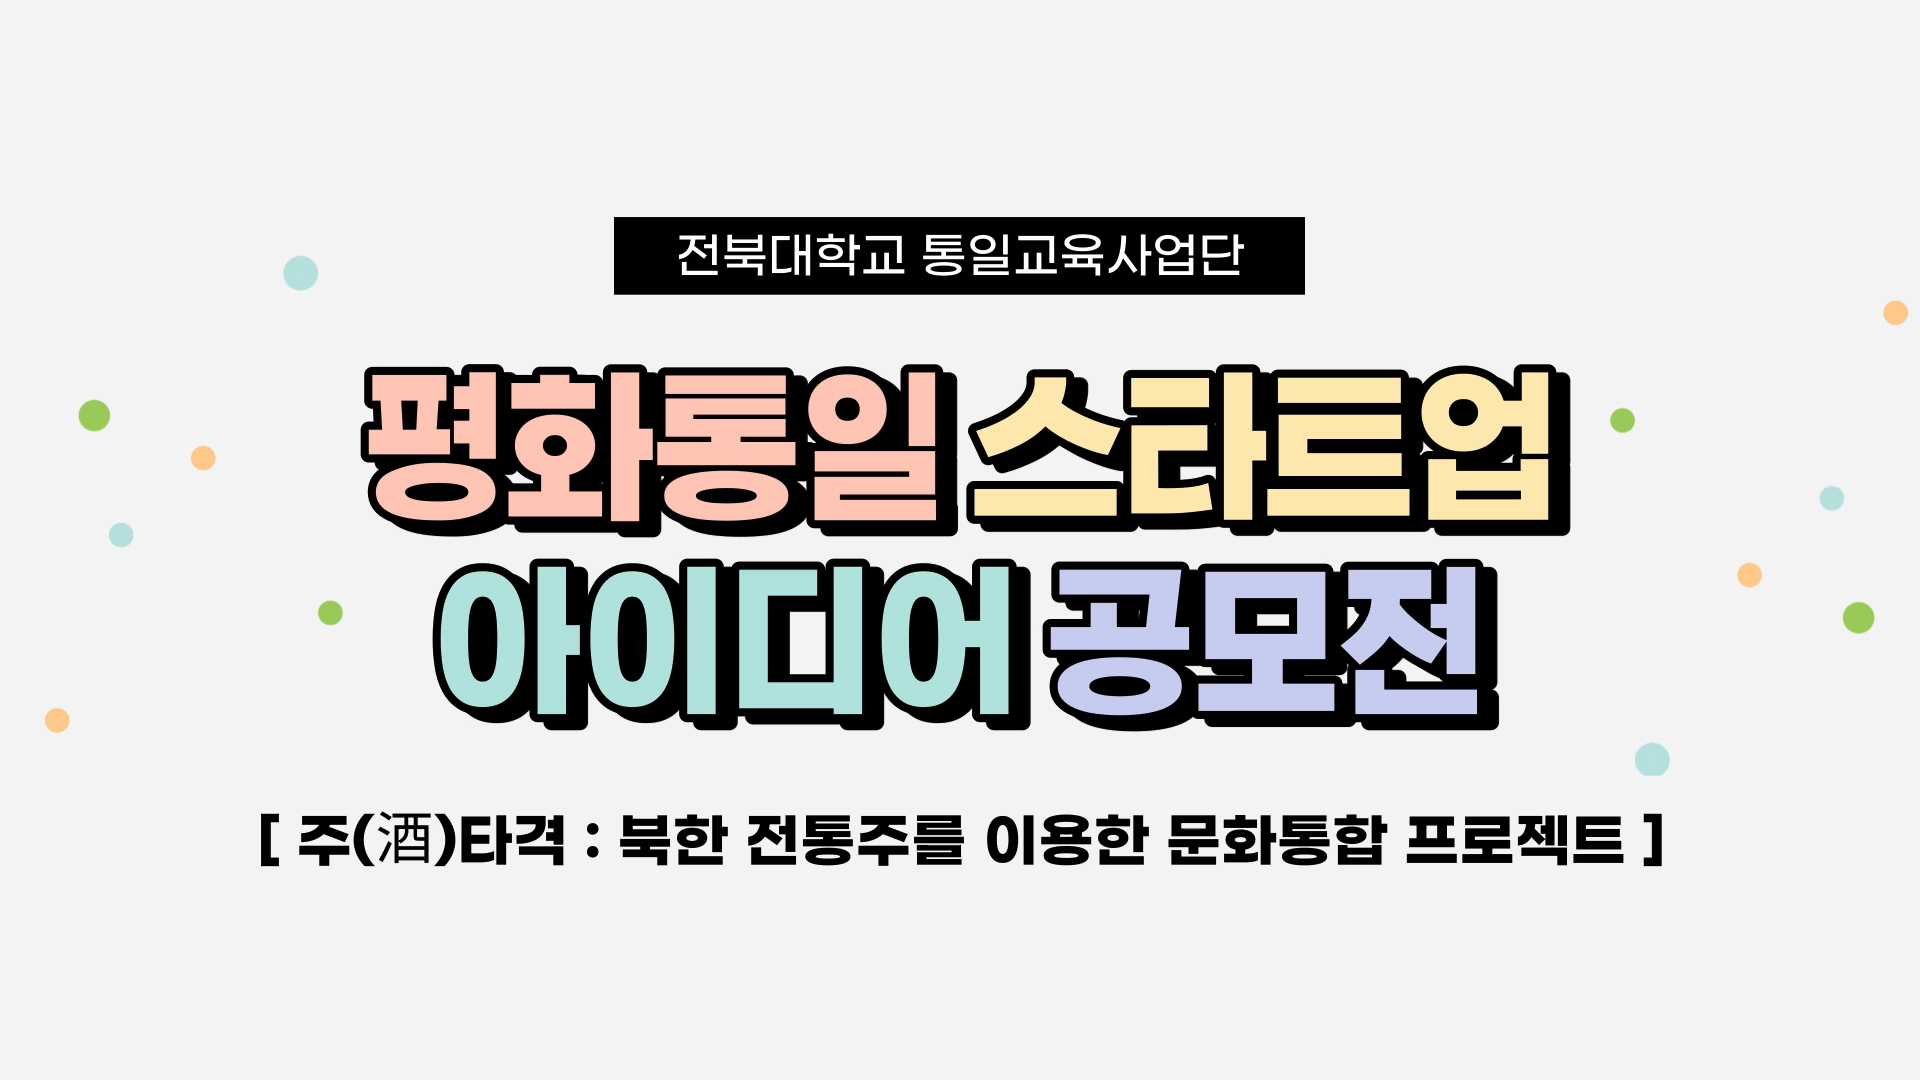 전북대학교_평화통일 스타트업 아이디어 공모전 - 주타격